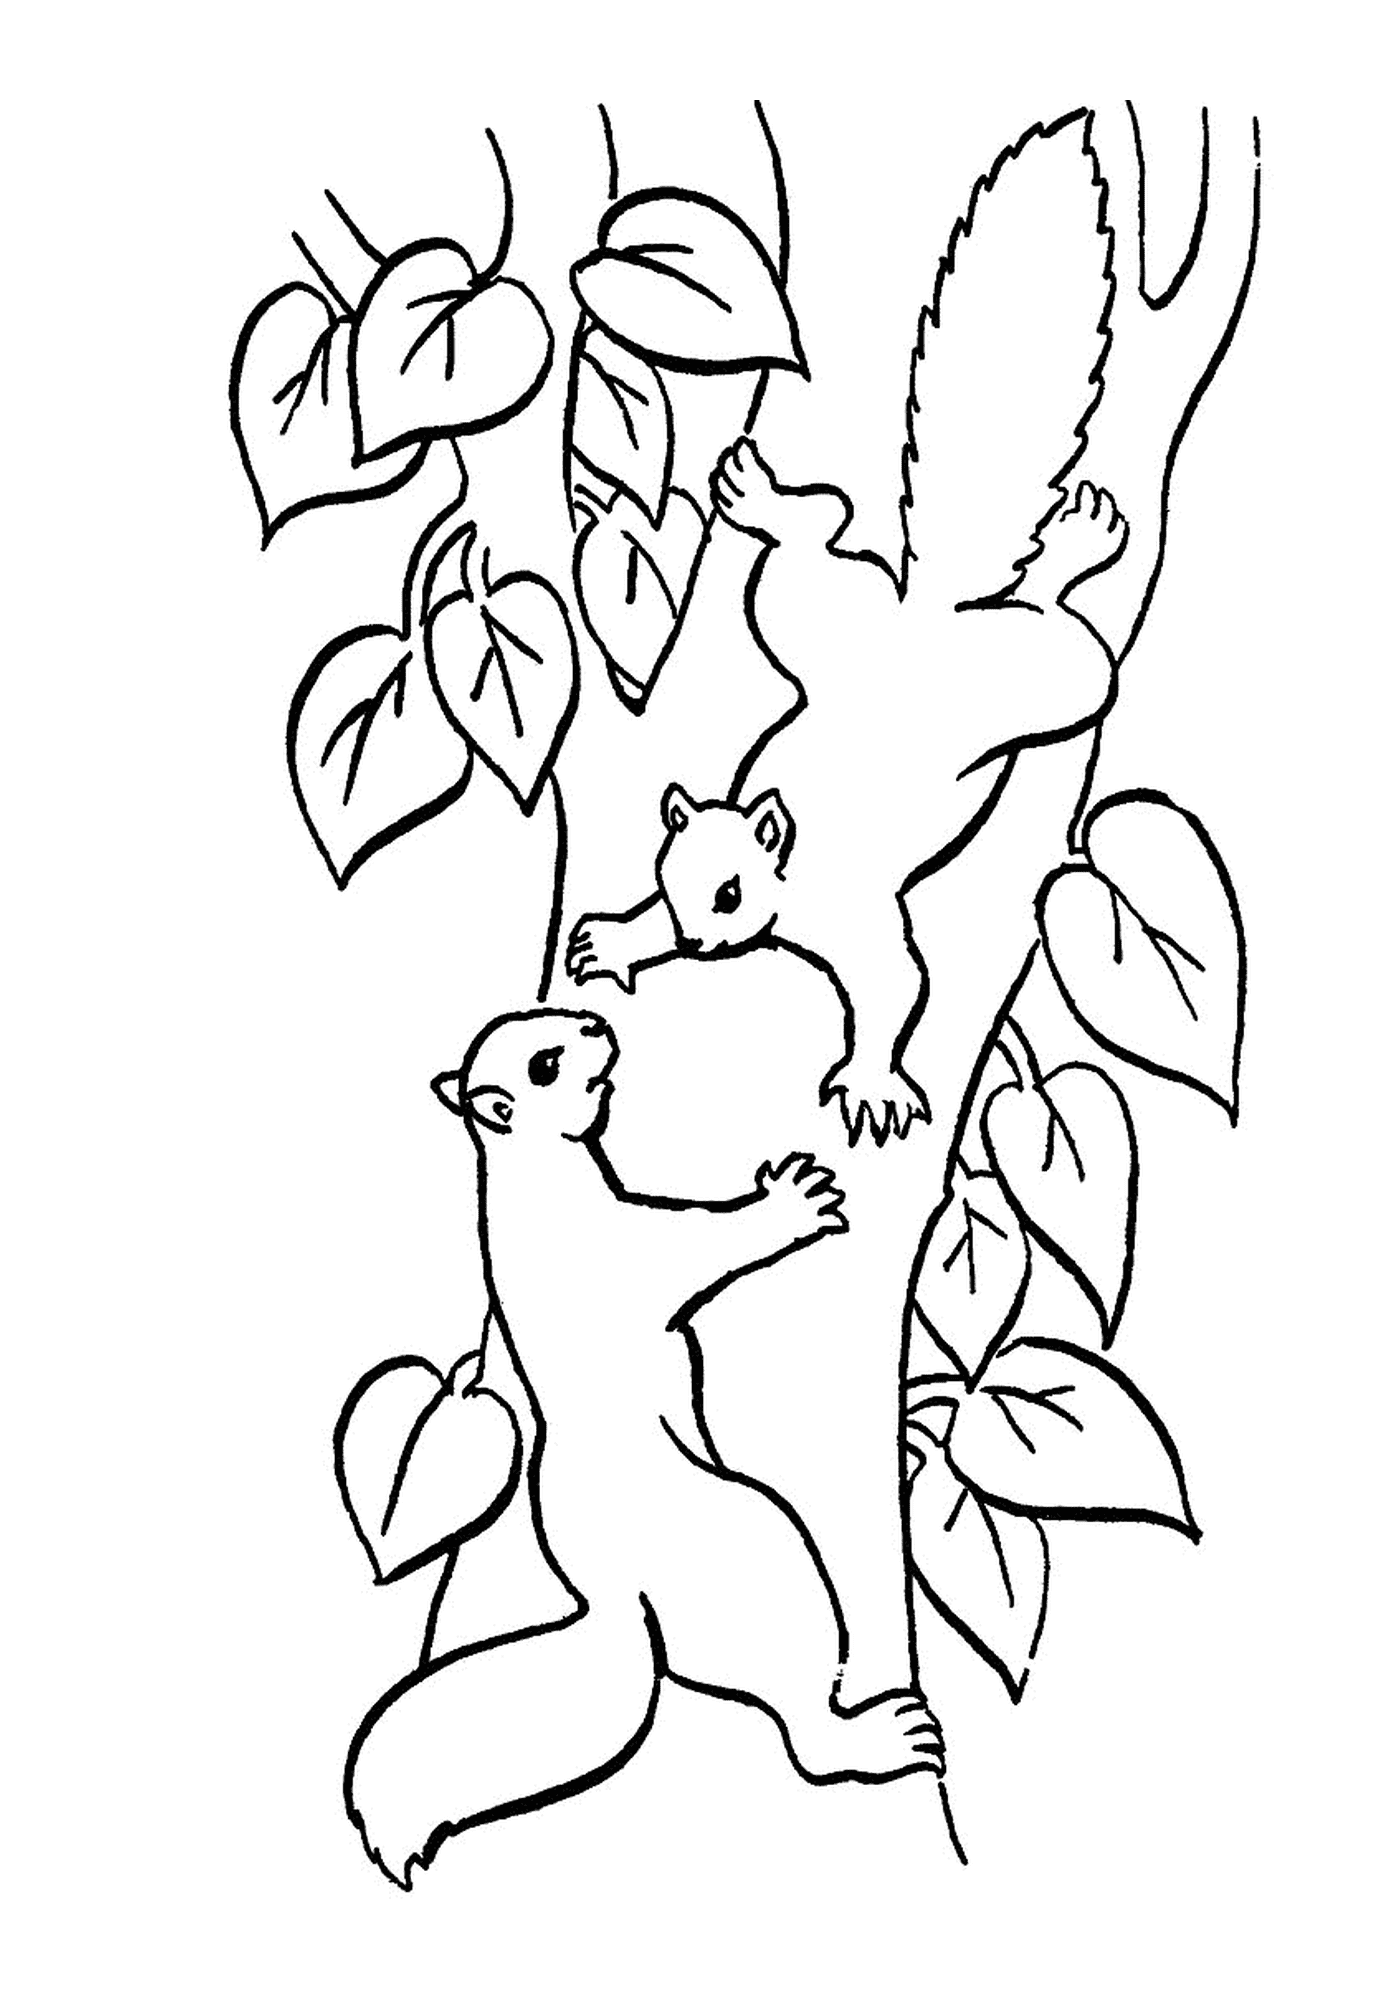   Deux écureuils sur une branche d'arbre 